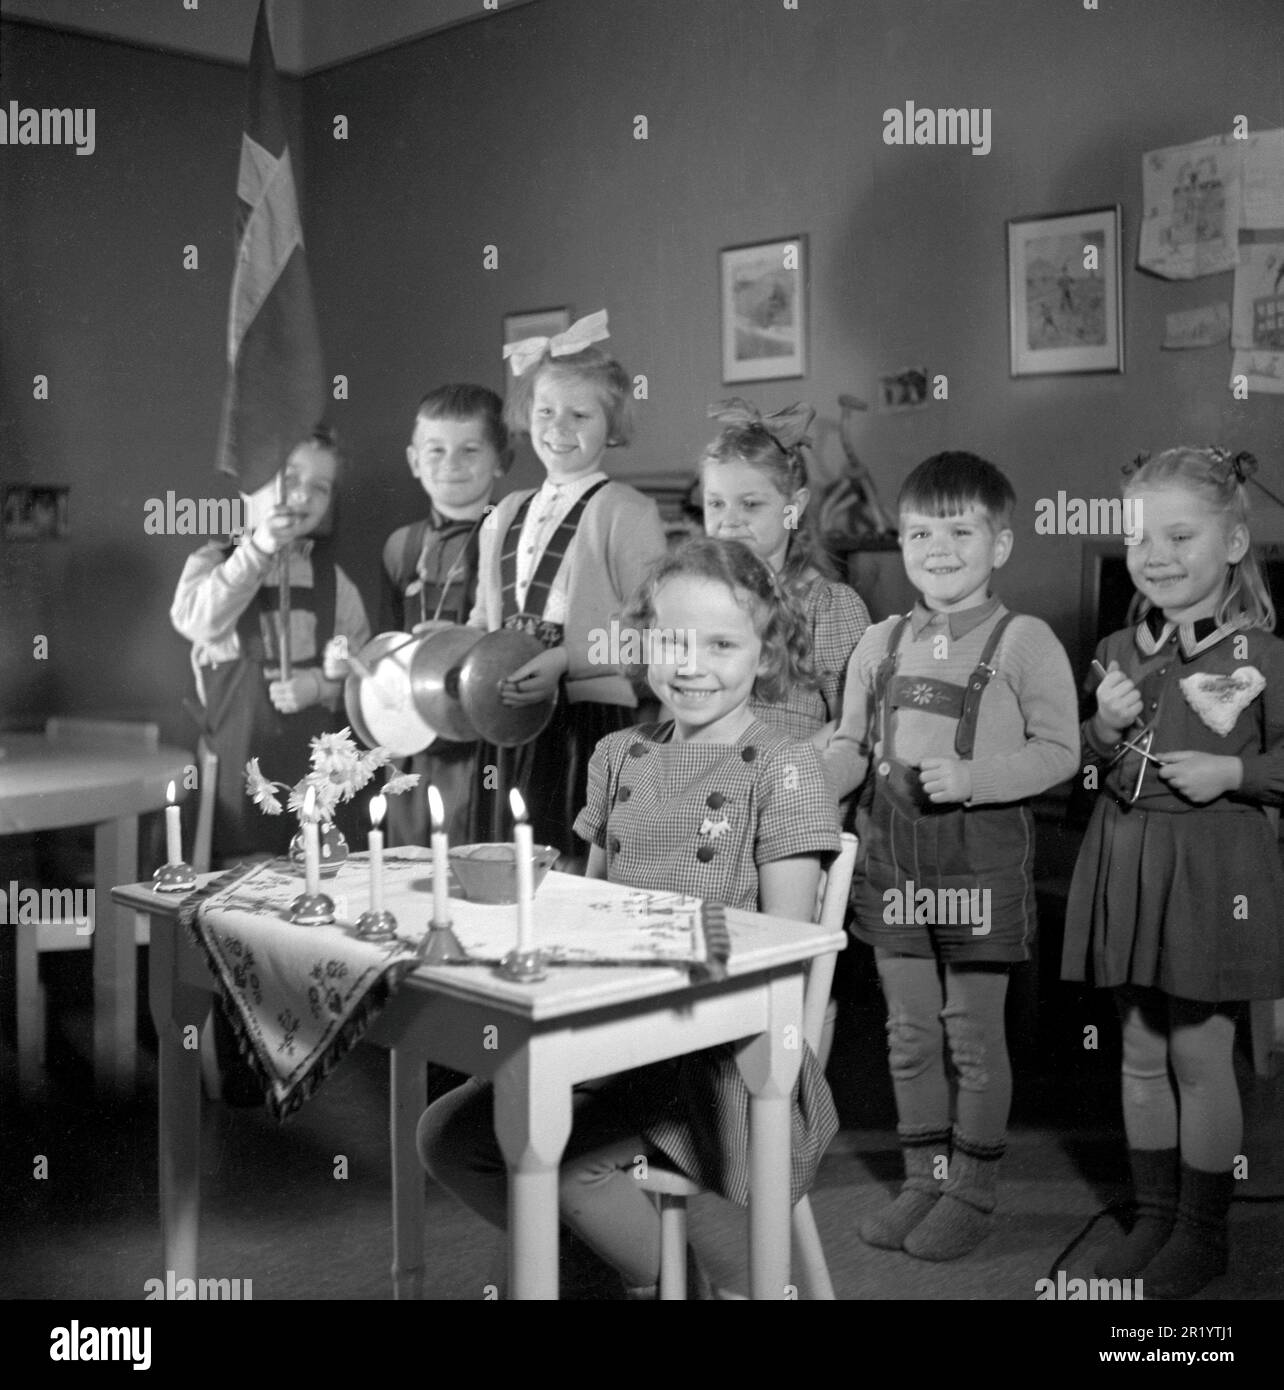 Anniversaire en 1940s. La fille d'anniversaire est assise à un bureau décoré de cinq bougies allumées, c'est son cinquième anniversaire. Un groupe de ses amis sont debout dans le dos chantant et jouant pour elle. La photo est prise à l'école maternelle de Stockholm avec des enfants âgés de 4-6 ans. Suède 1947. Conard réf. 882 Banque D'Images